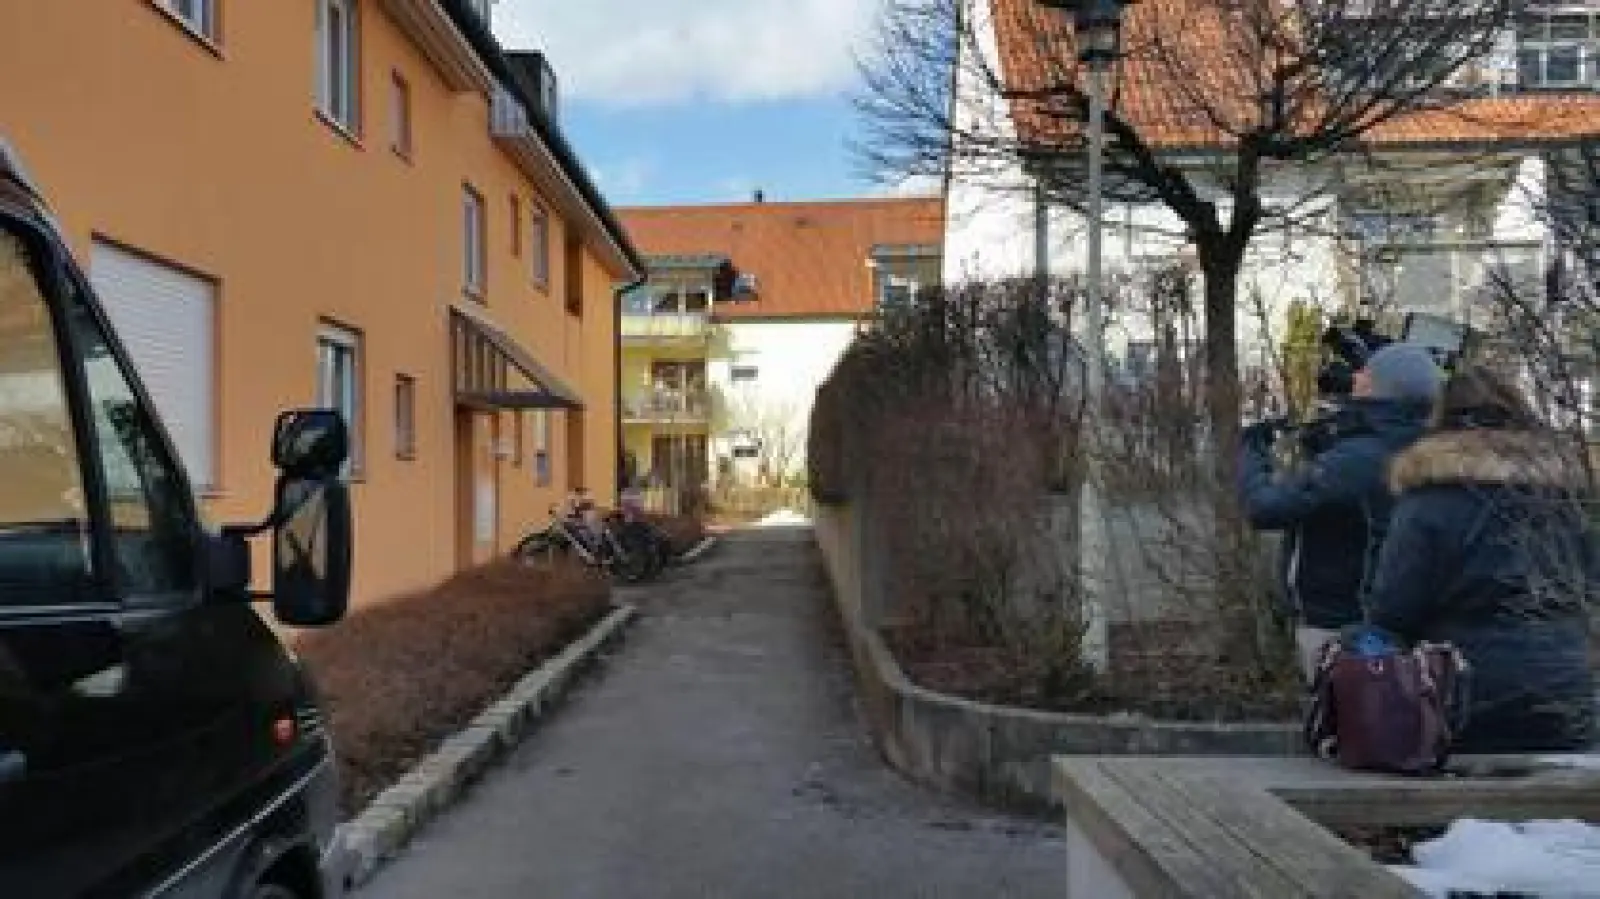 In einer Wohnung in diesem Haus in Petershausen fanden Polizeibeamte am Montagnachmittag die Leichen von zwei Frauen aus Dachau. Sie fielen ganz offensichtlich einem Gewaltverbrechen zum Opfer. Ein Tatverdächtiger wurde gestern festgenommen.